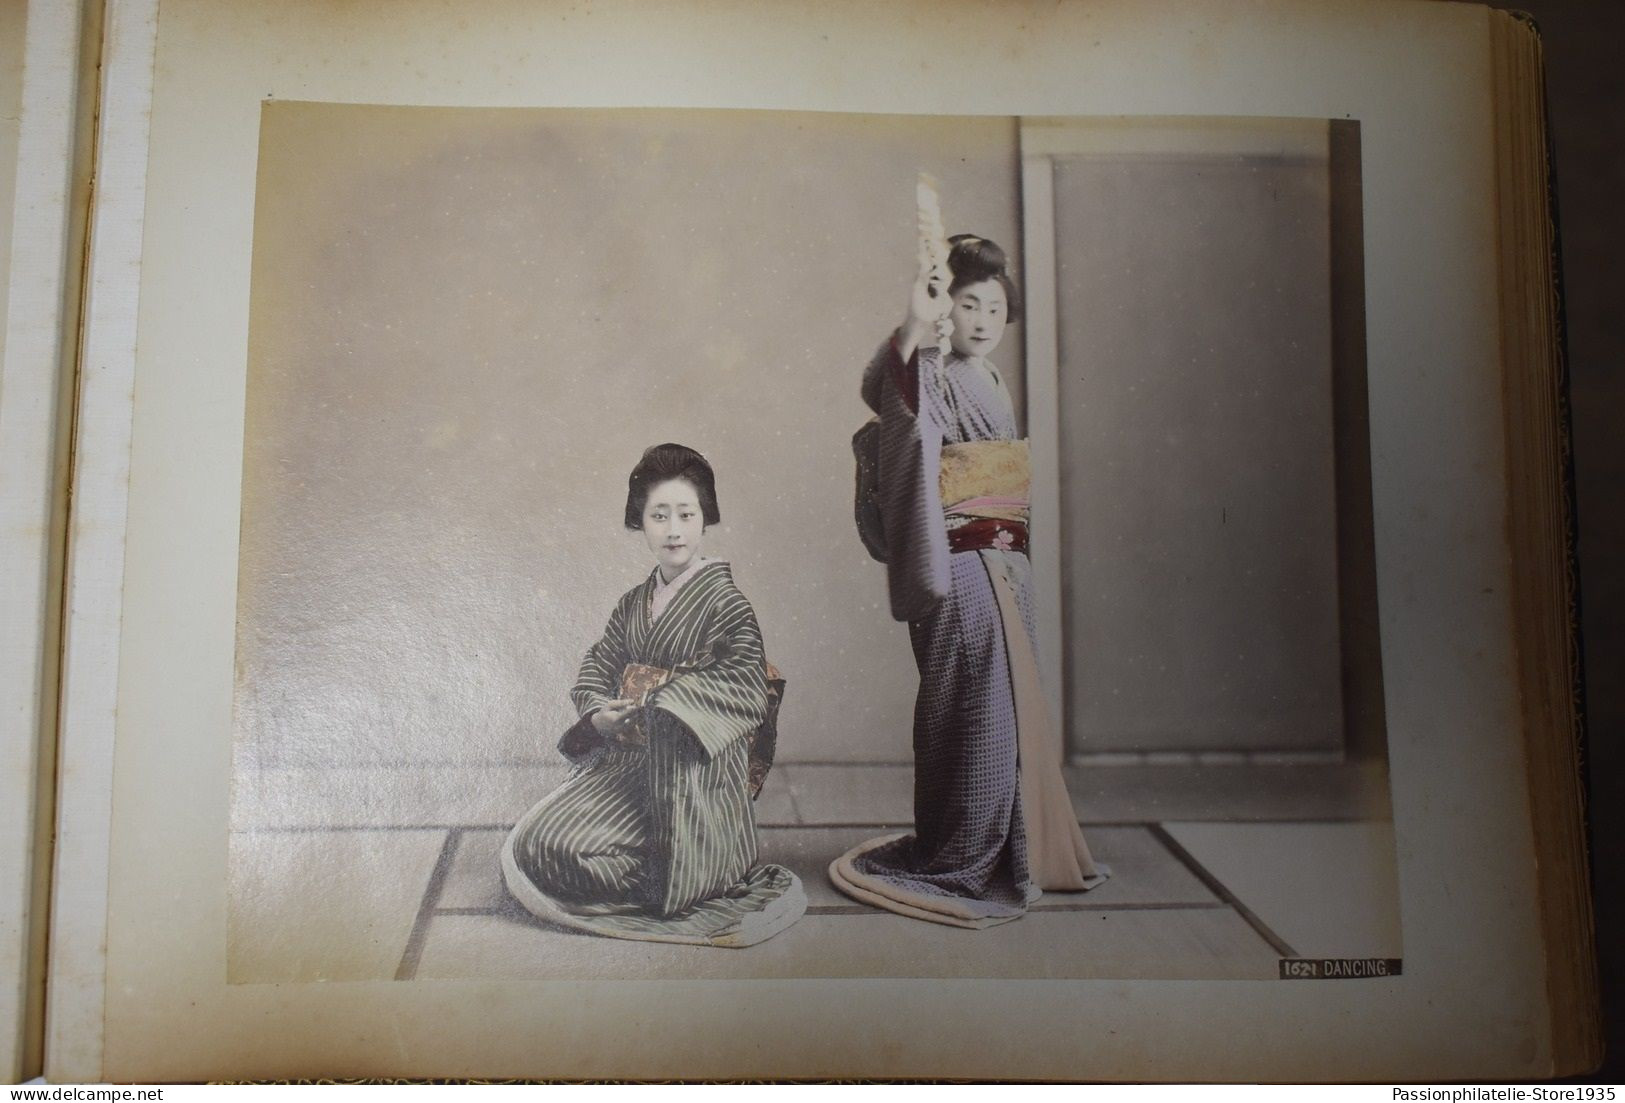 Album de 50 photos 27/36 cm japonais Japan Japon vers1870 1890